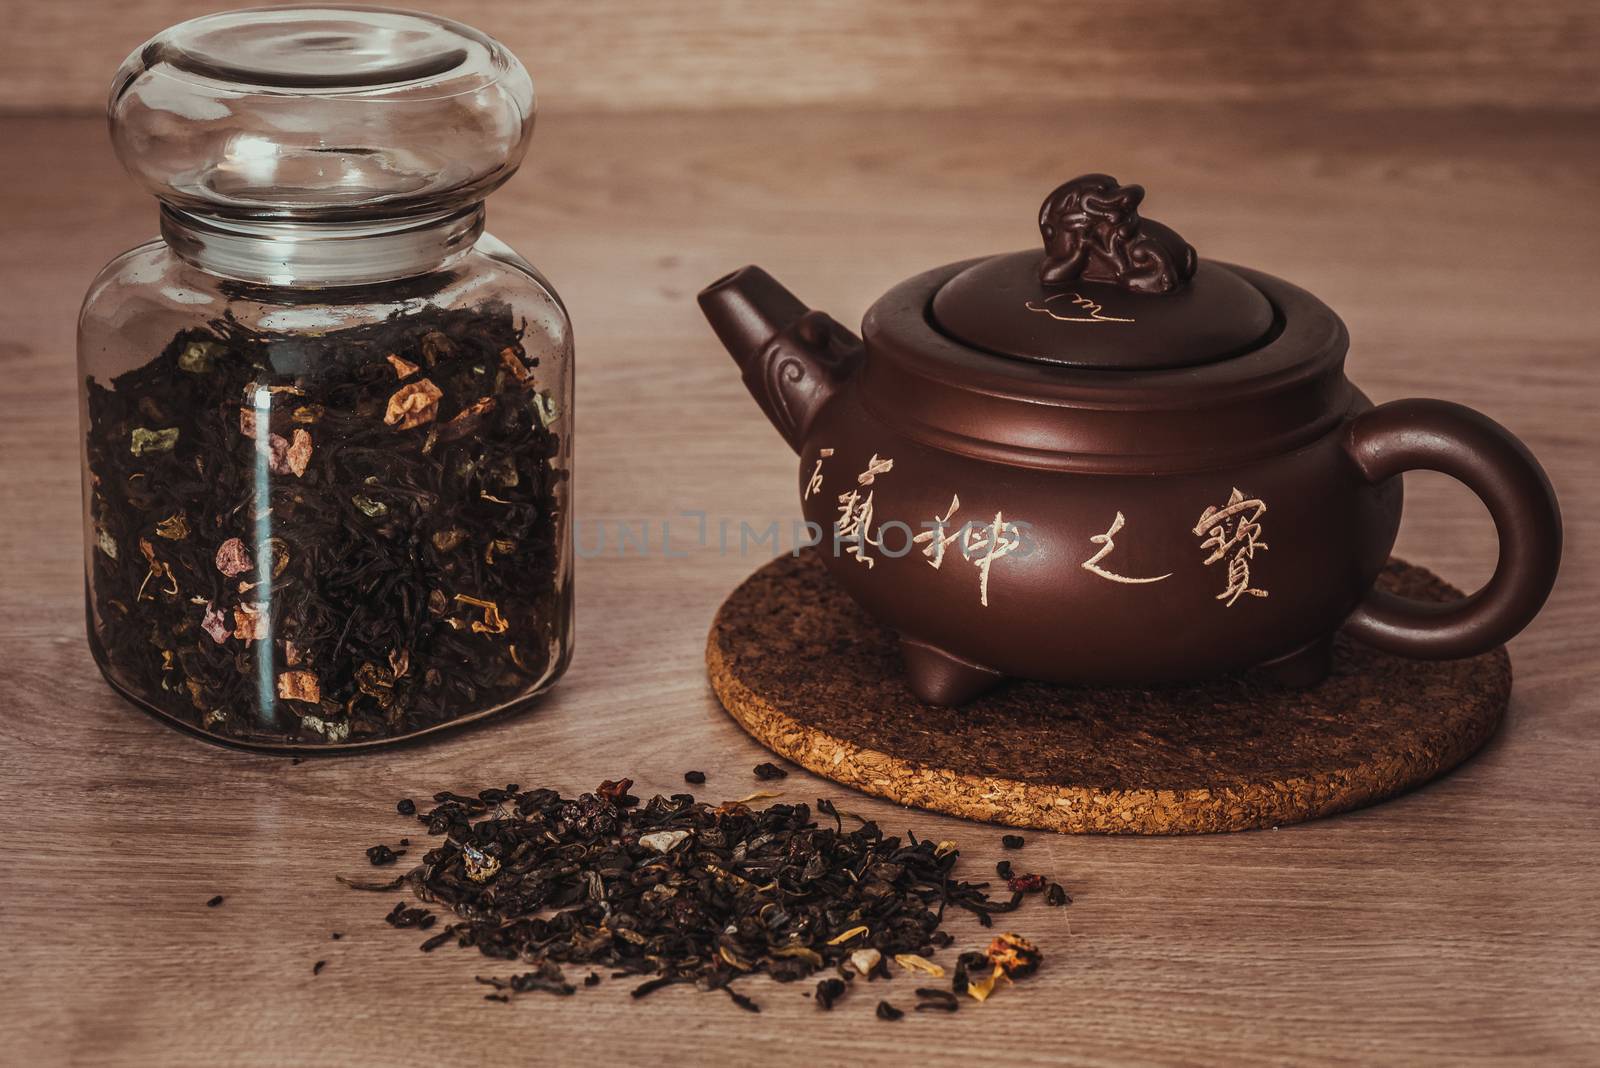 Asian teapot and jar with tea by Seva_blsv